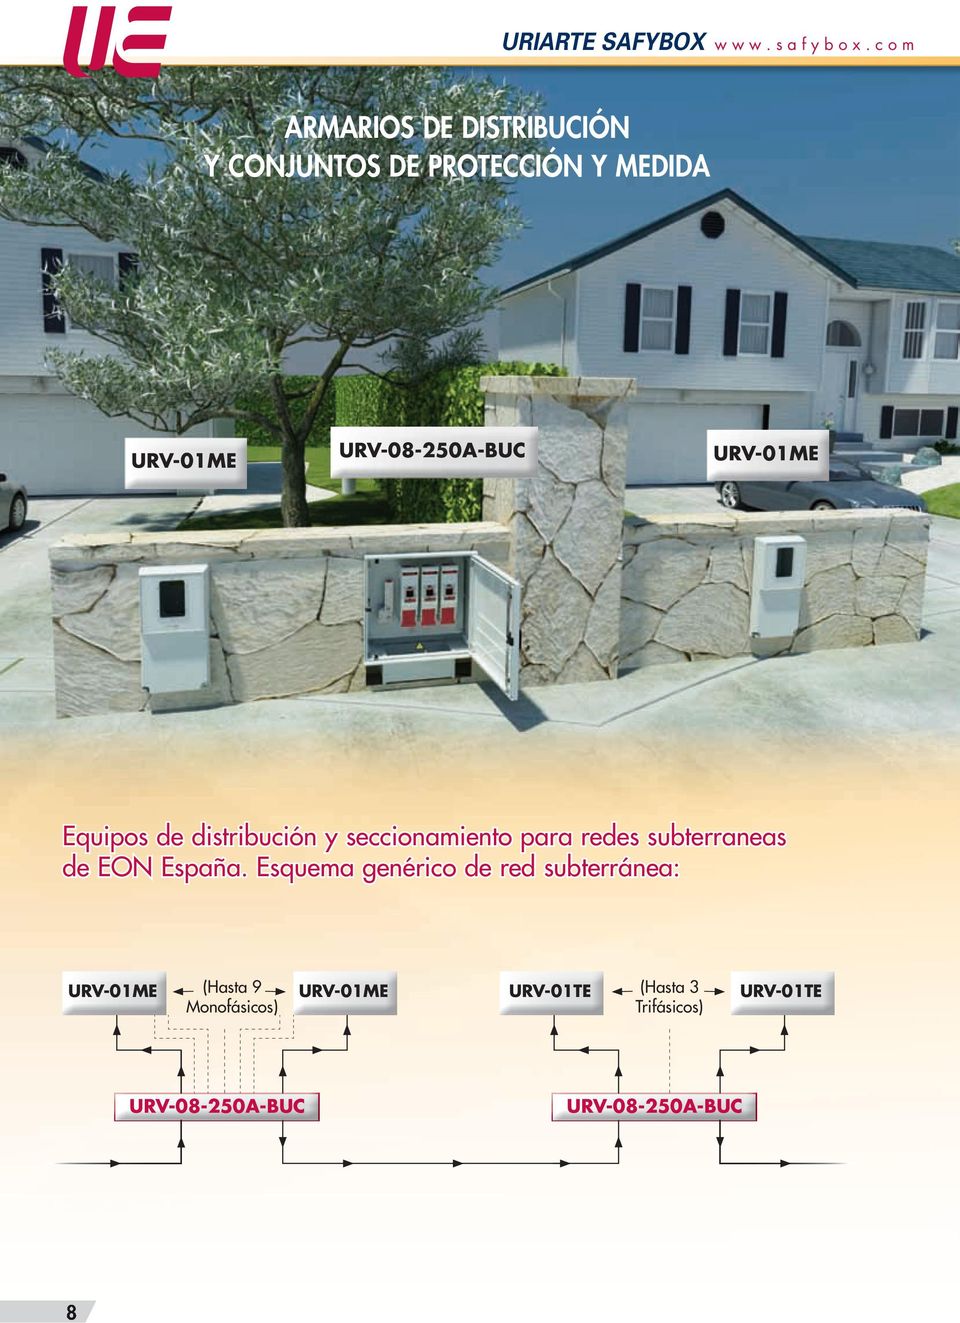 URV-01ME Equipos de distribución y seccionamiento para redes subterraneas de EON España.